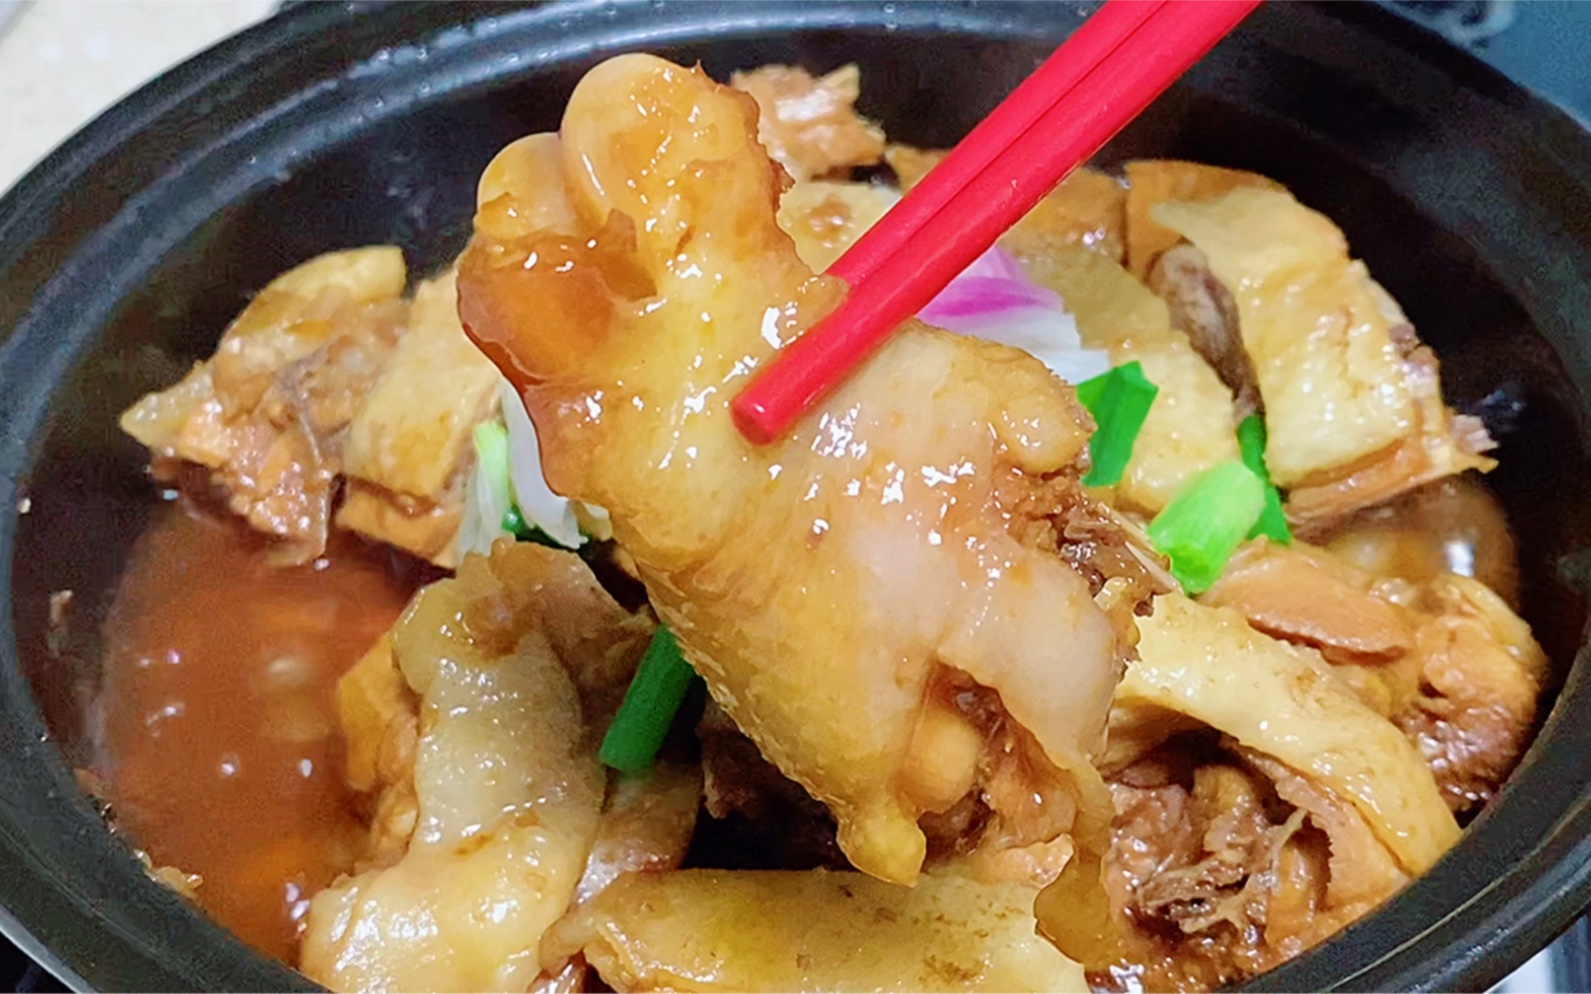 沙姜焗鸡,好吃又简单的做法,用汁来捞饭都可以吃上三大碗